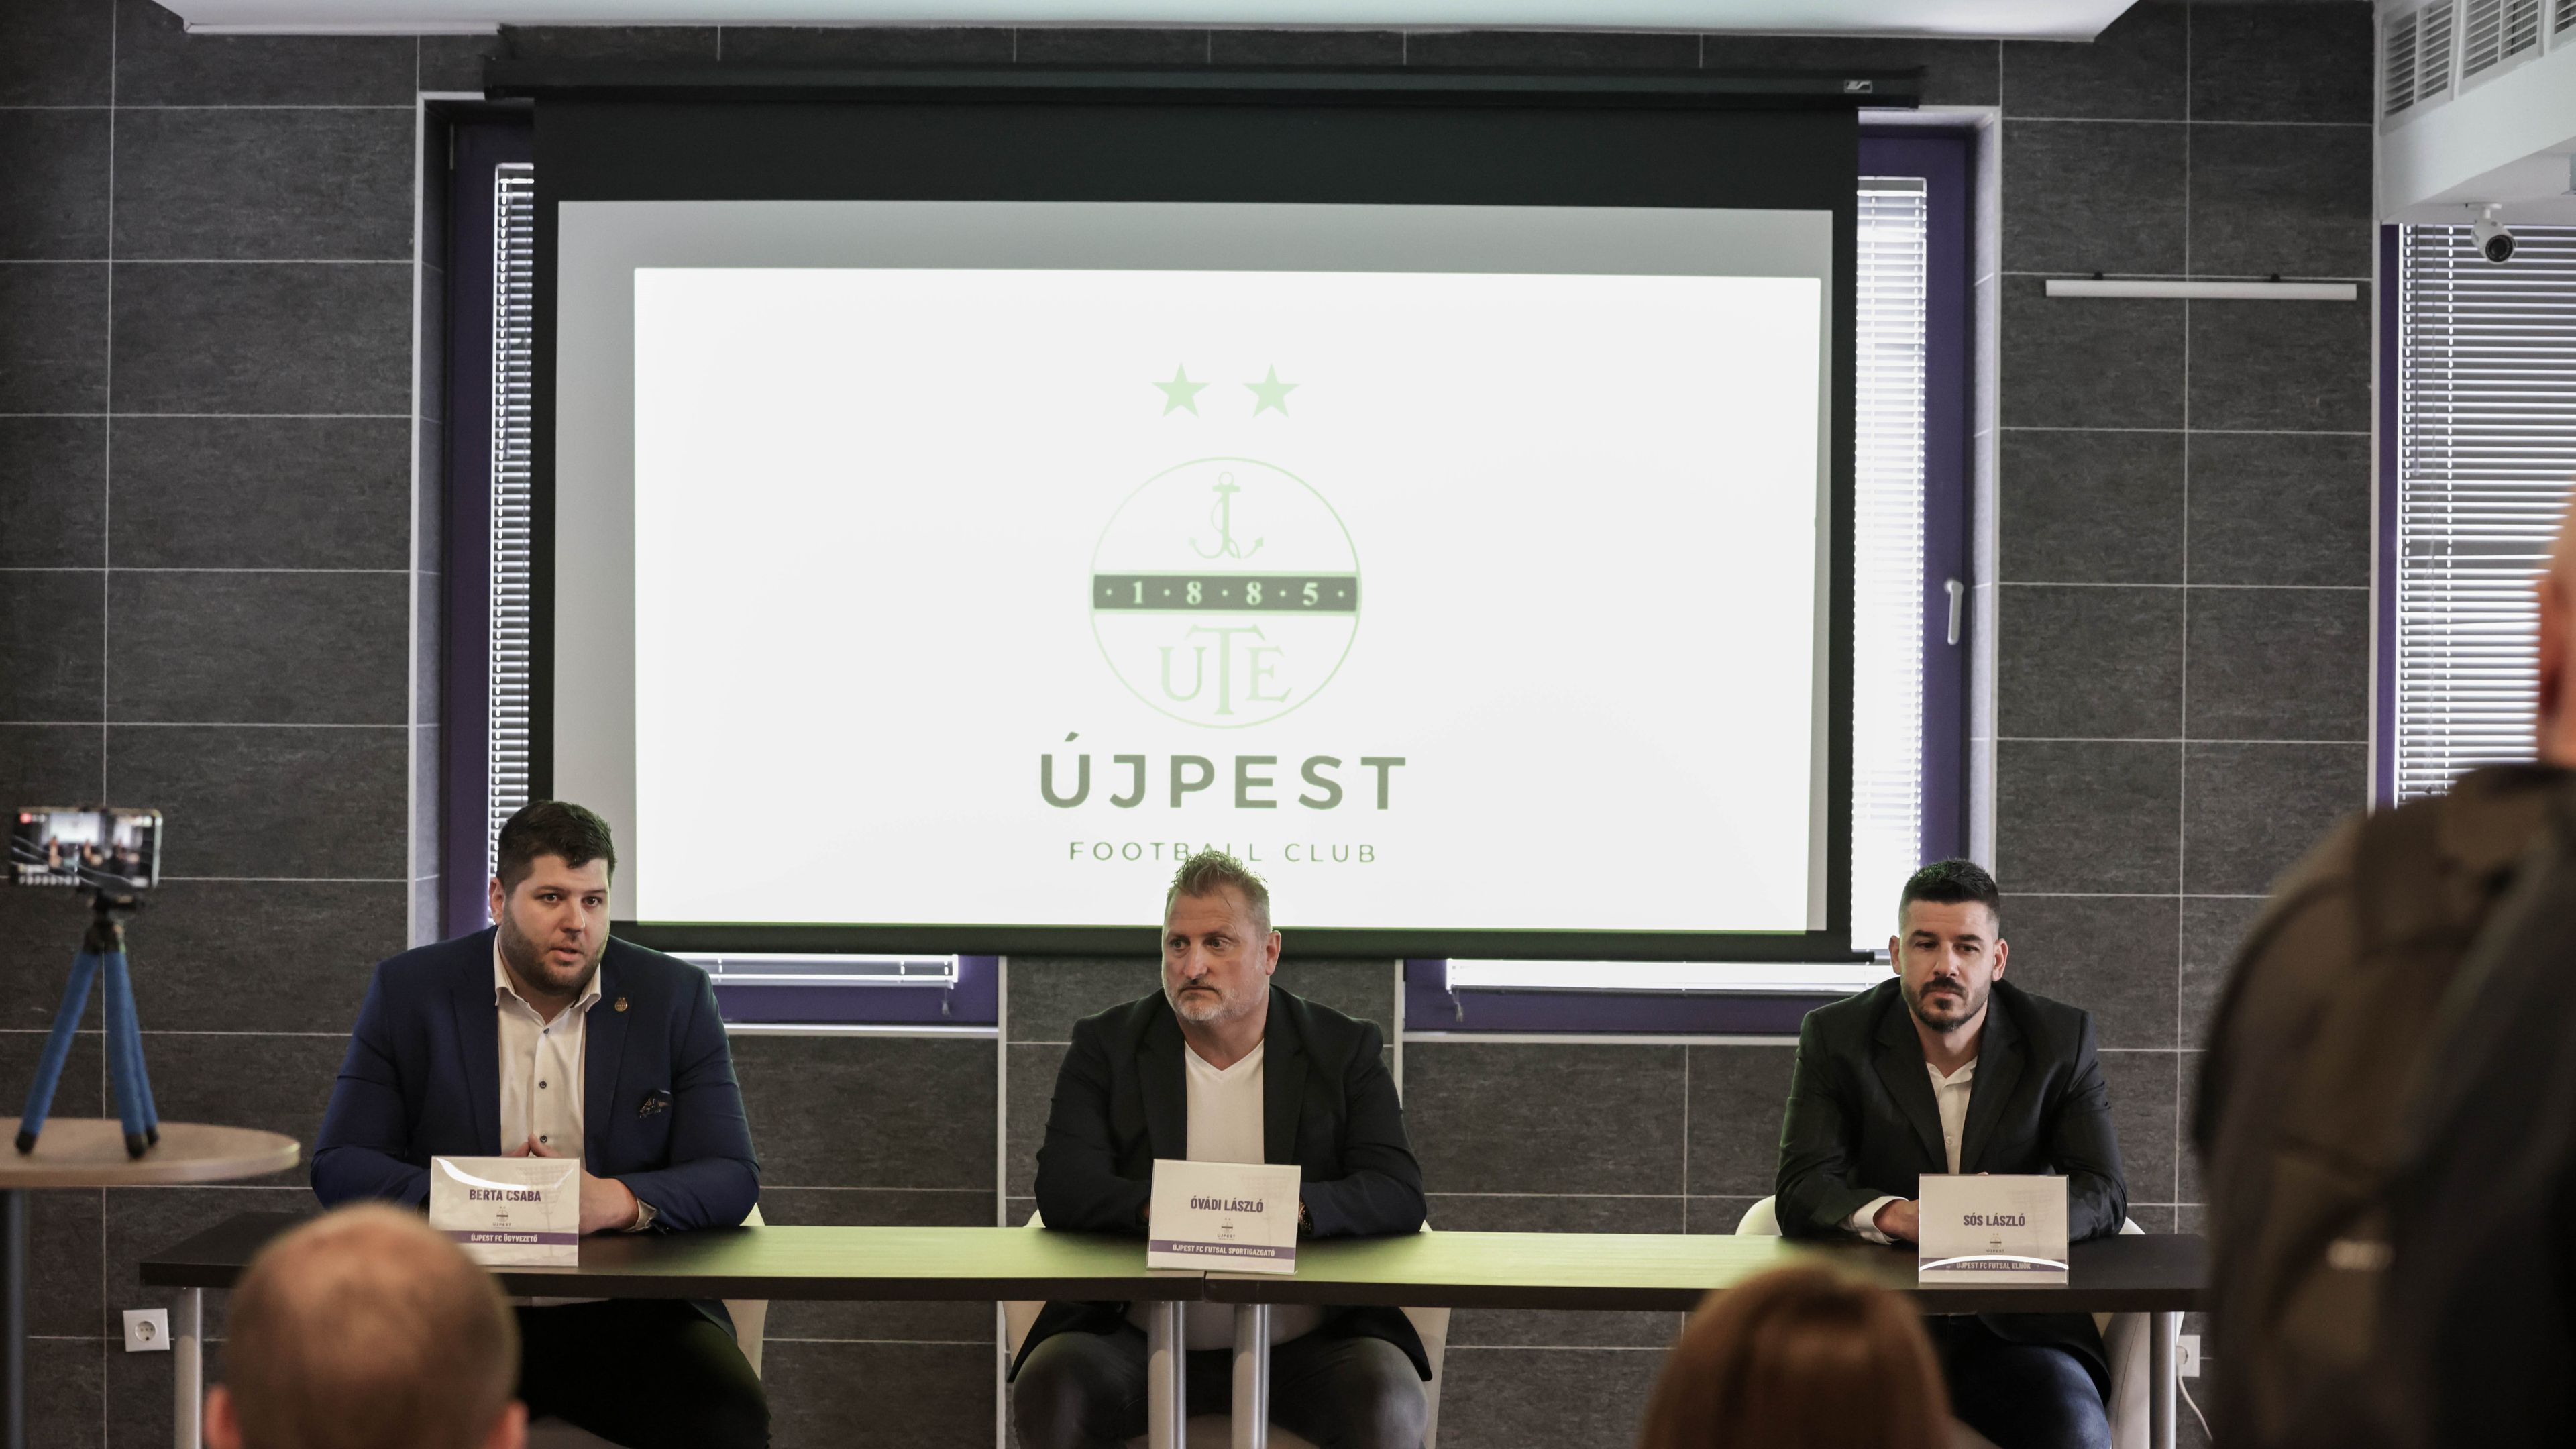 Berta Csaba, az Újpest FC ügyvezető igazgatója (balra) kedden bejelentette, hogy új szakosztállyal bővült az egyesület, a lila-fehér drukkerek a jövőben a futsal csapatnak is szurkolhatnak. Fotó: Újpest FC